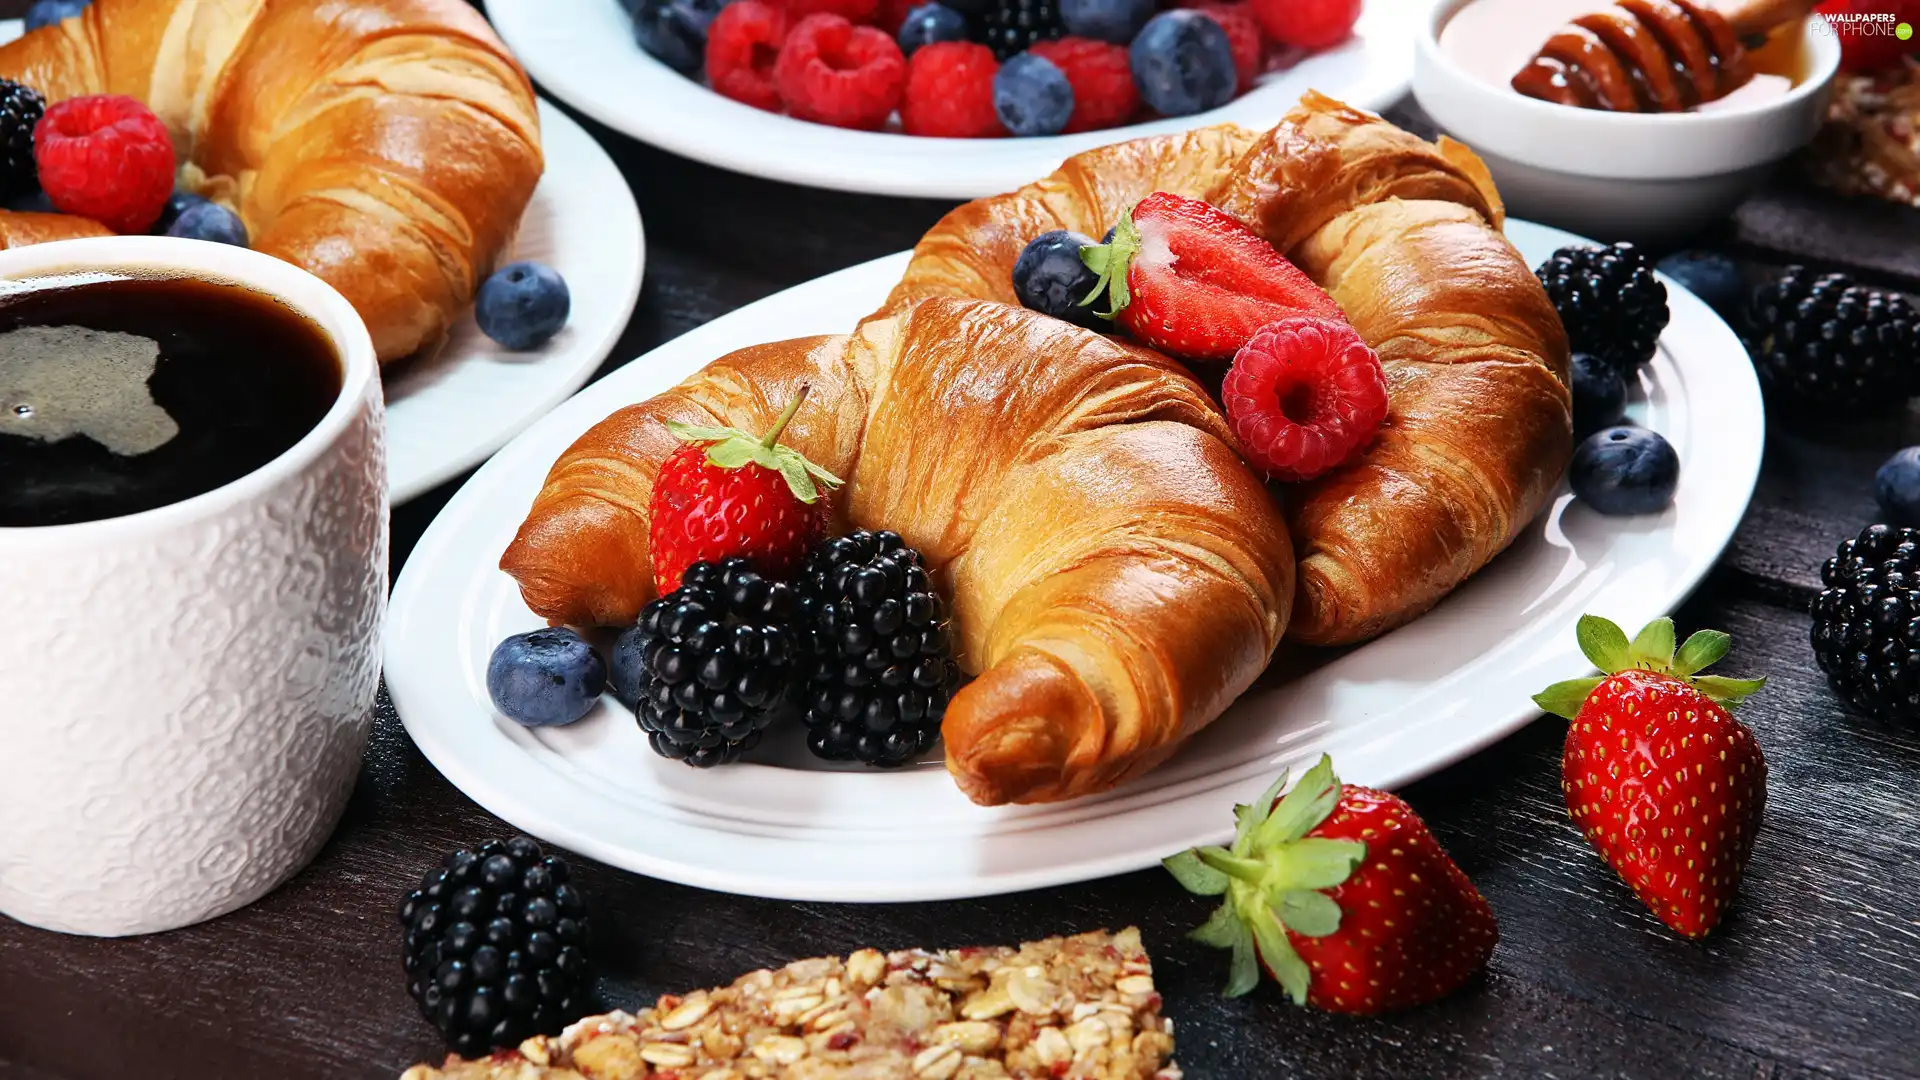 Fruits, breakfast, blueberries, strawberries, raspberries, Cup, coffee, Croissant, croissants, plate, blackberries